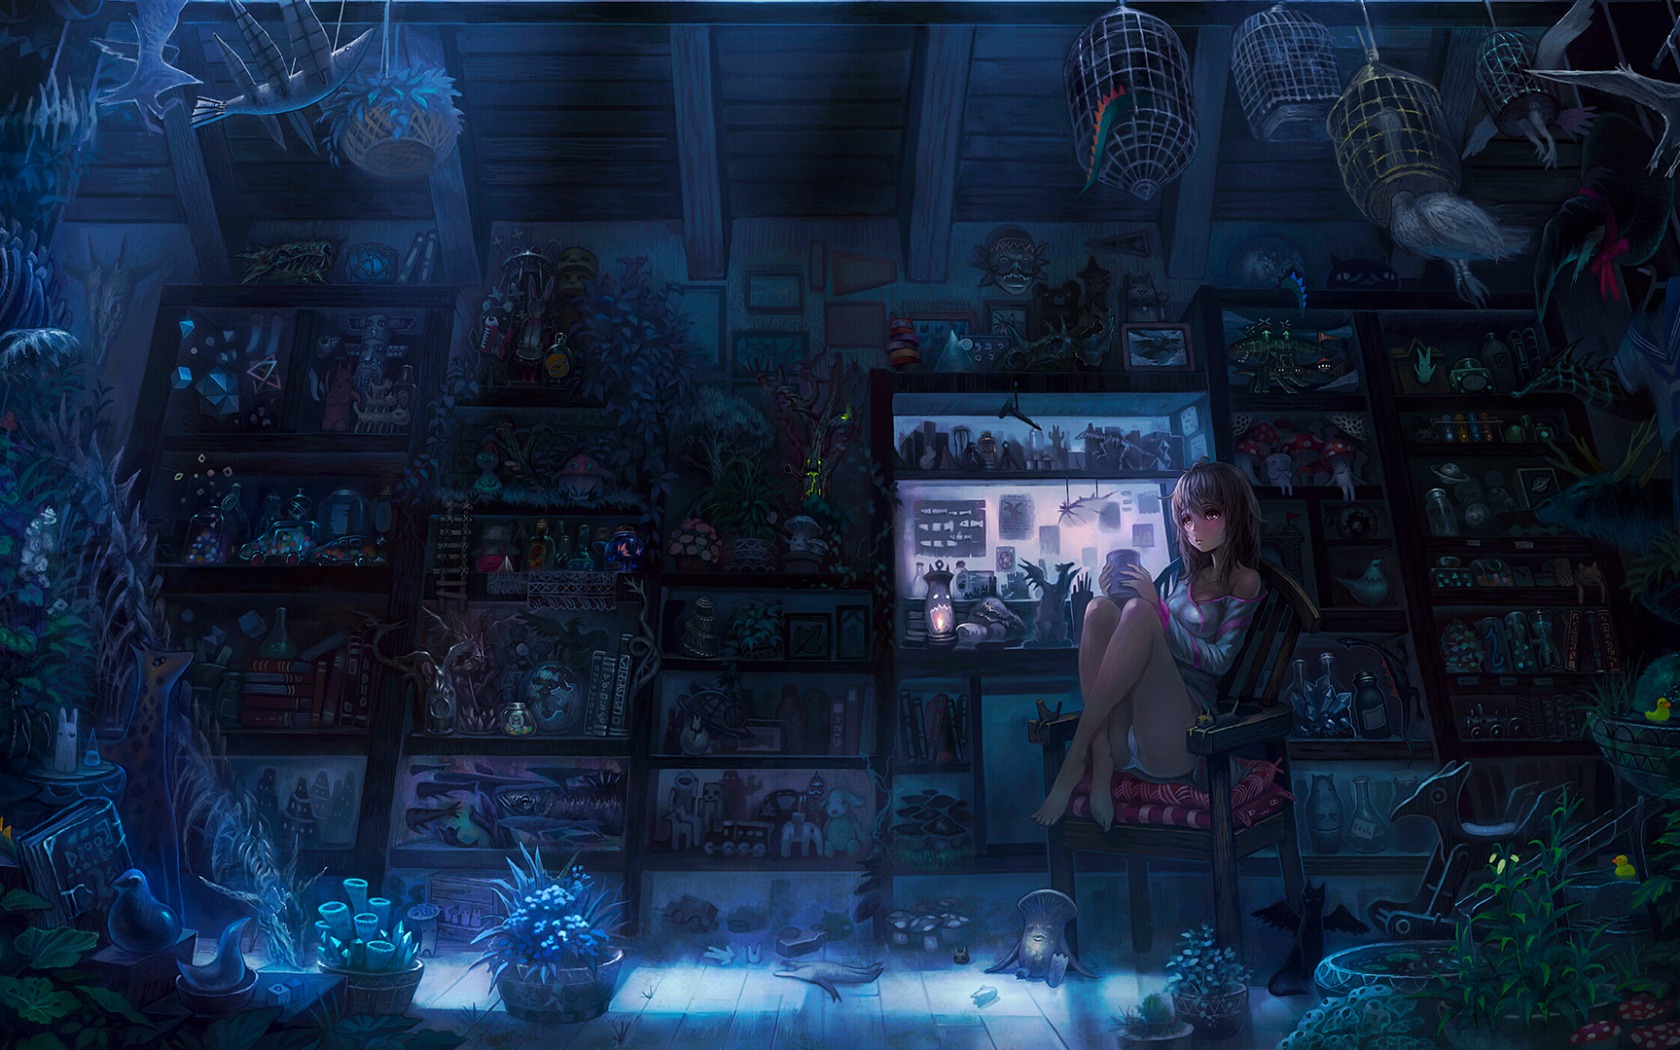 Anime Secret Room Background - 1680x1050 Wallpaper 